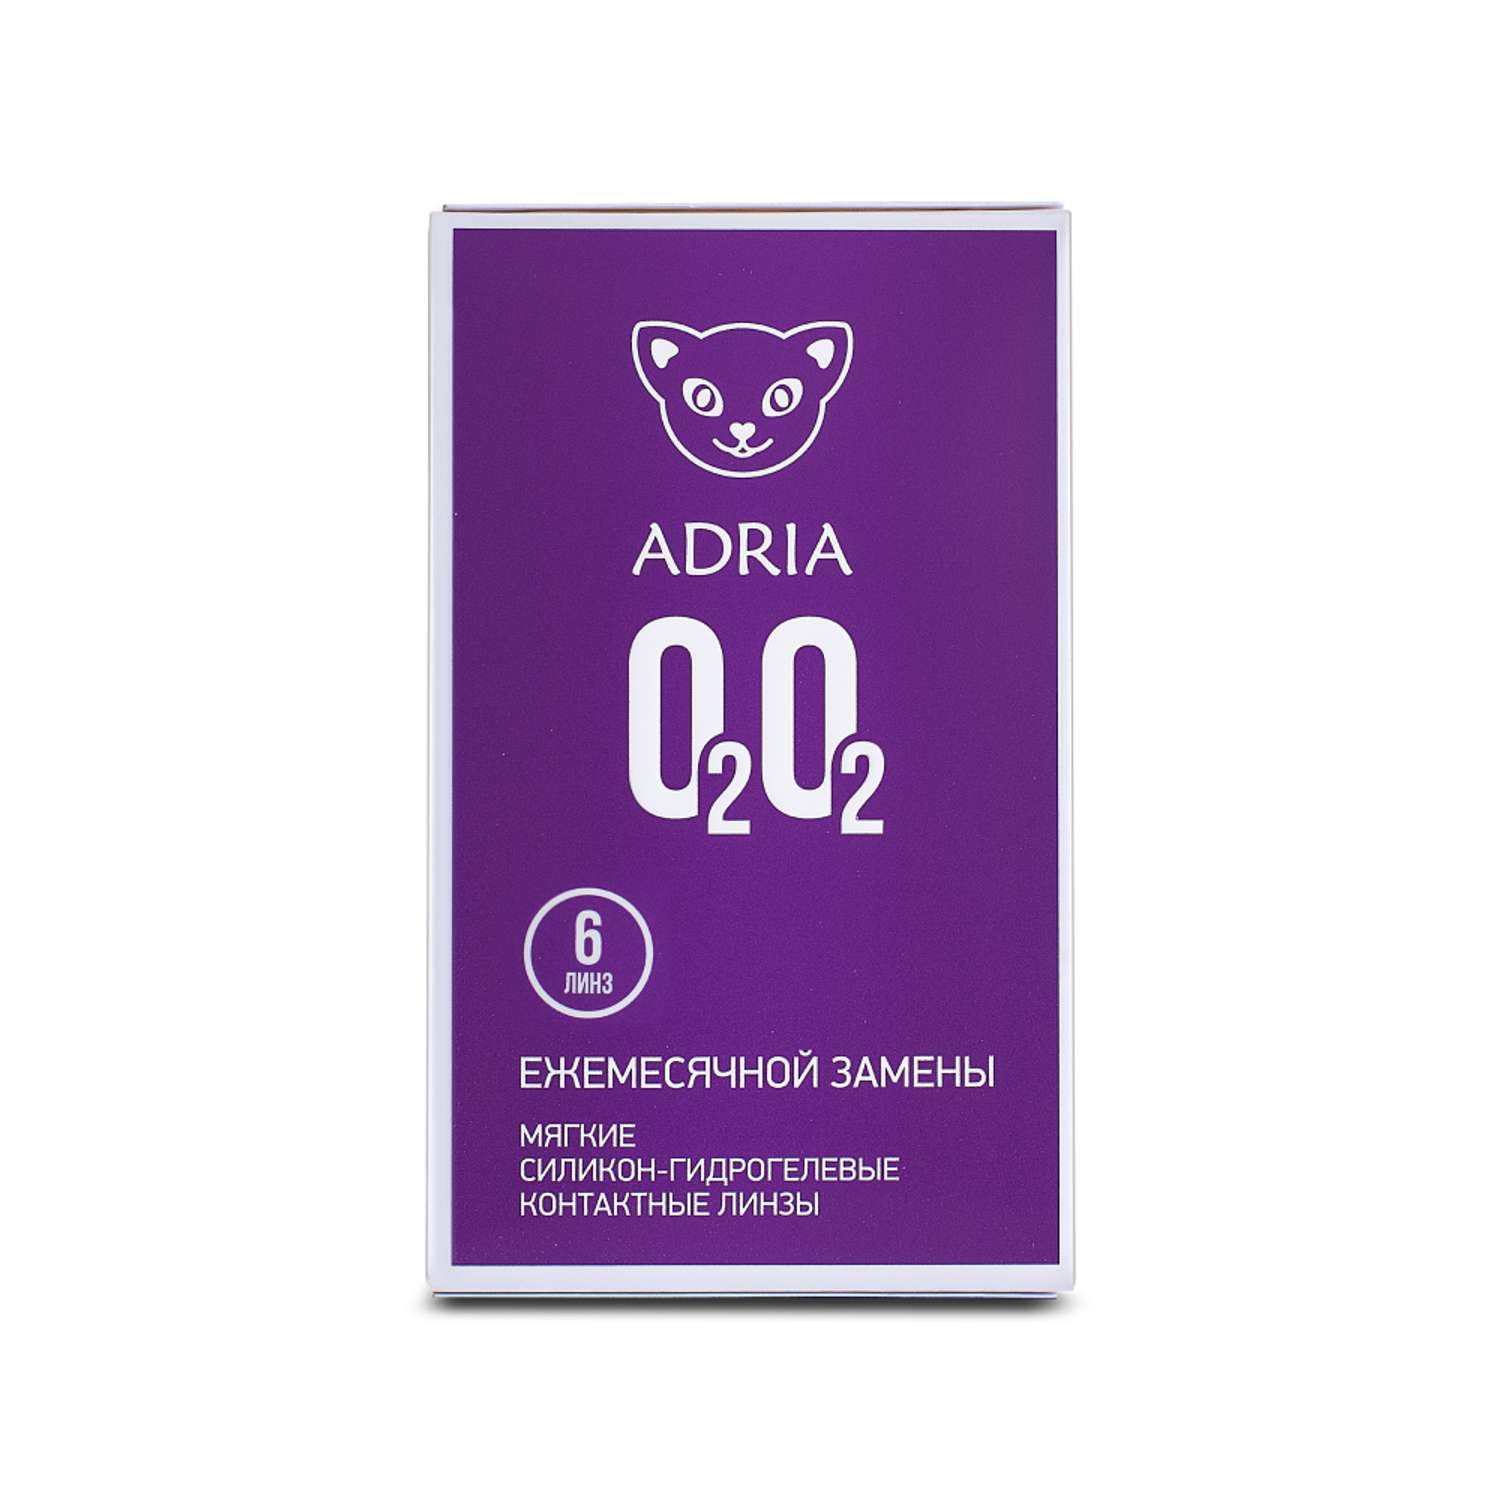 Контактные линзы ADRIA O2O2 6 линз R 8.6 -2.25 - фото 6